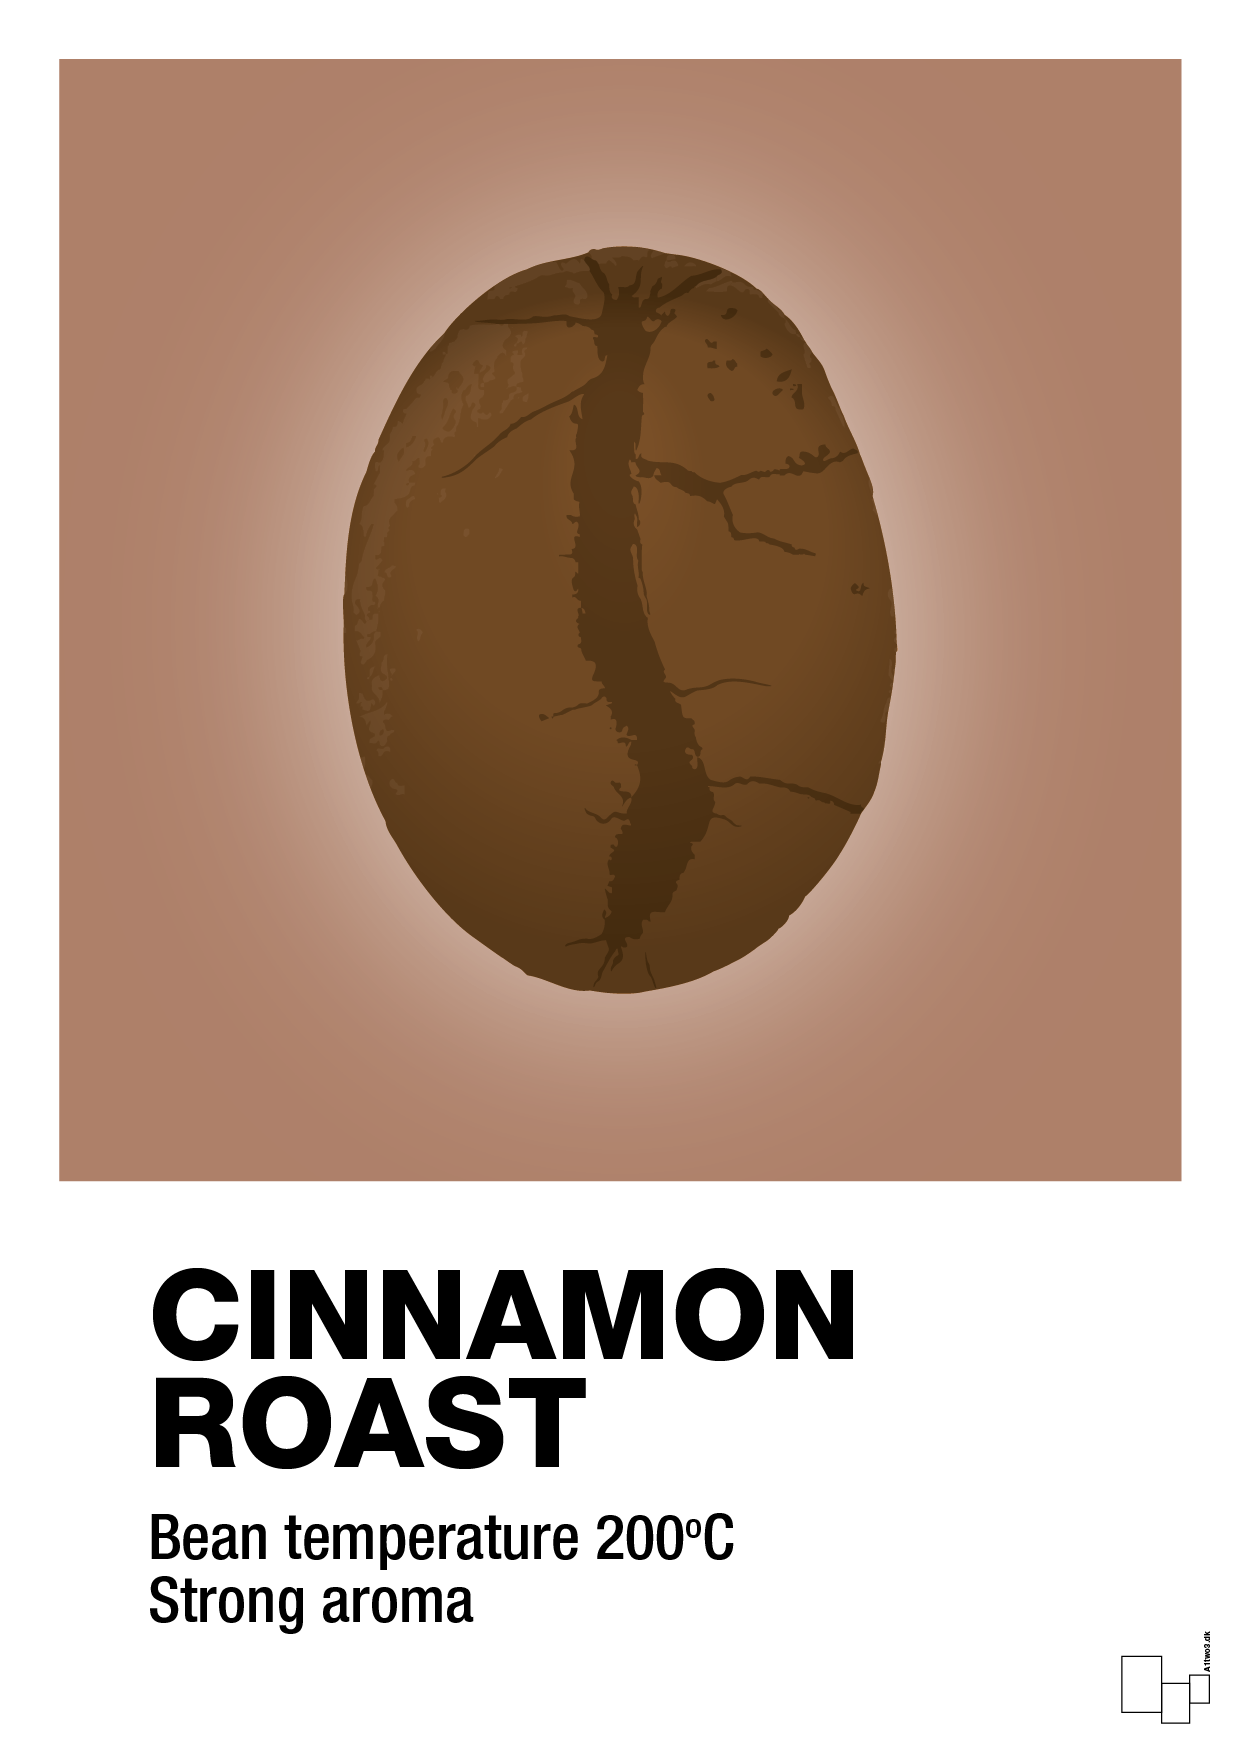 cinnamom roast - Plakat med Mad & Drikke i Cider Spice